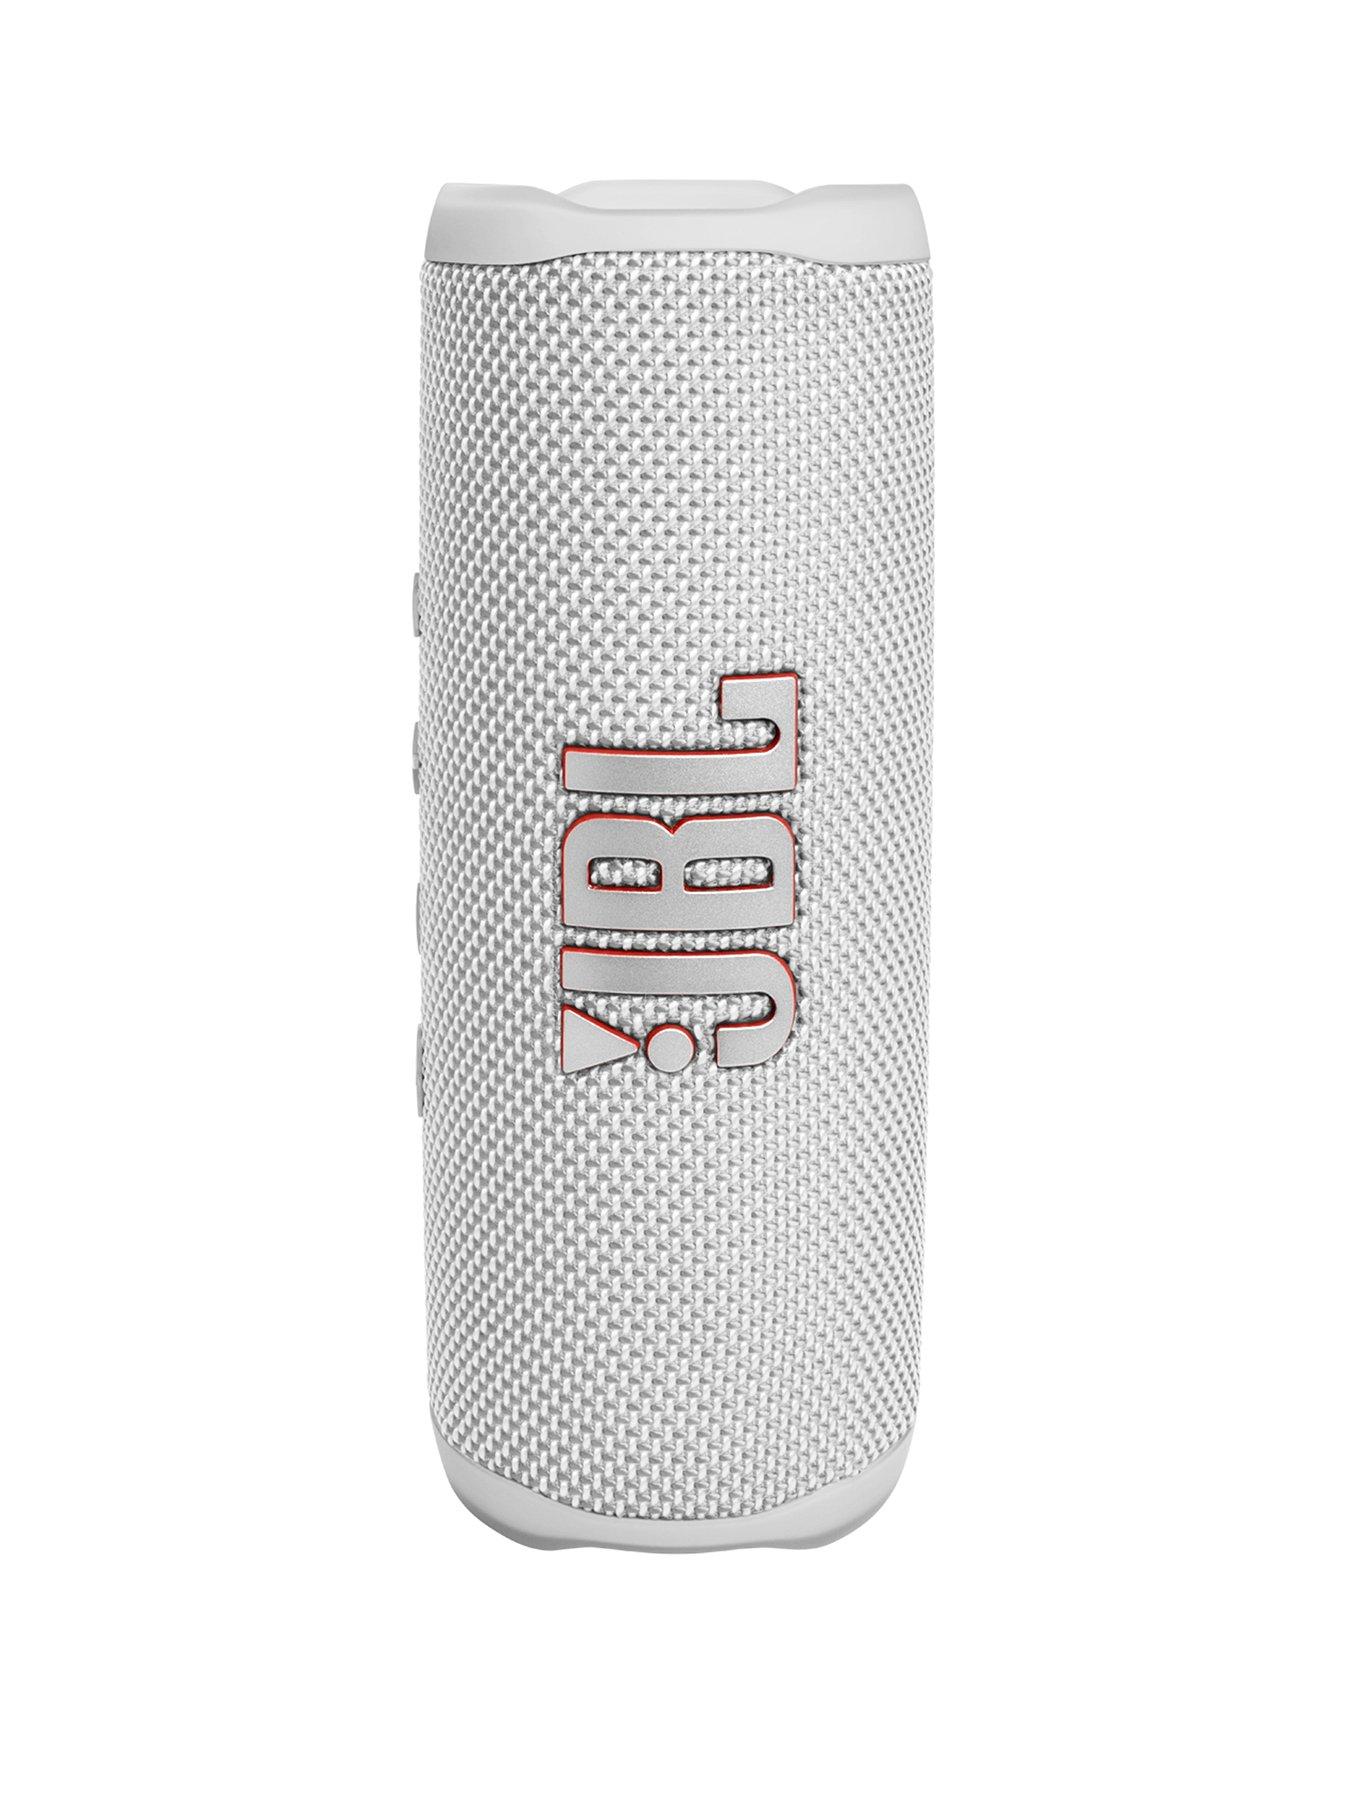 Jbl Flip 6 Portable Bluetooth Speaker - White